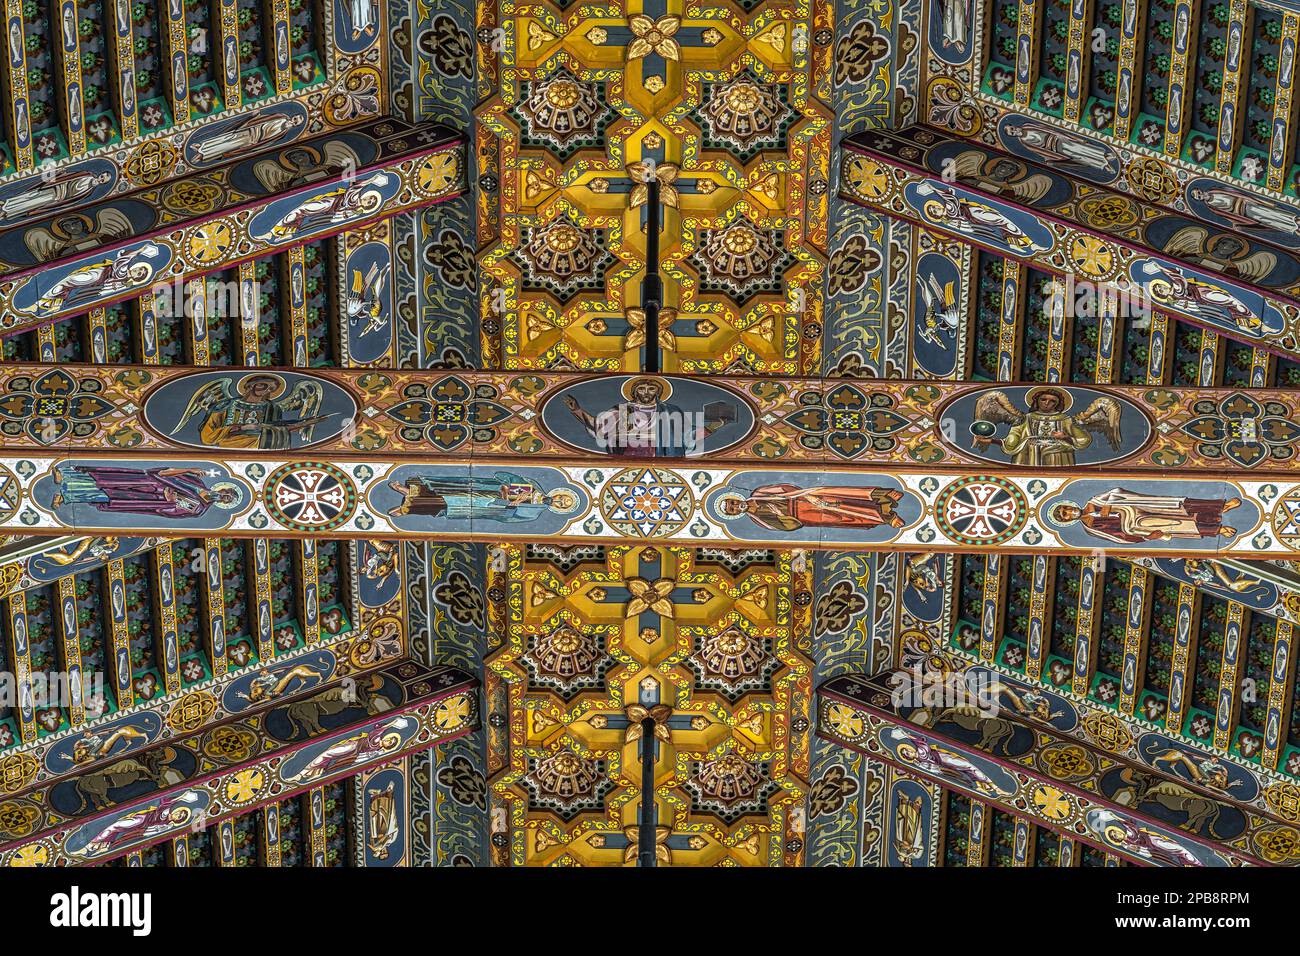 Detalle de la cubierta realizada con cerchas de madera pintadas y decoradas con figuras geométricas y santos en la Catedral Basílica de Santa María Assunta. Foto de stock